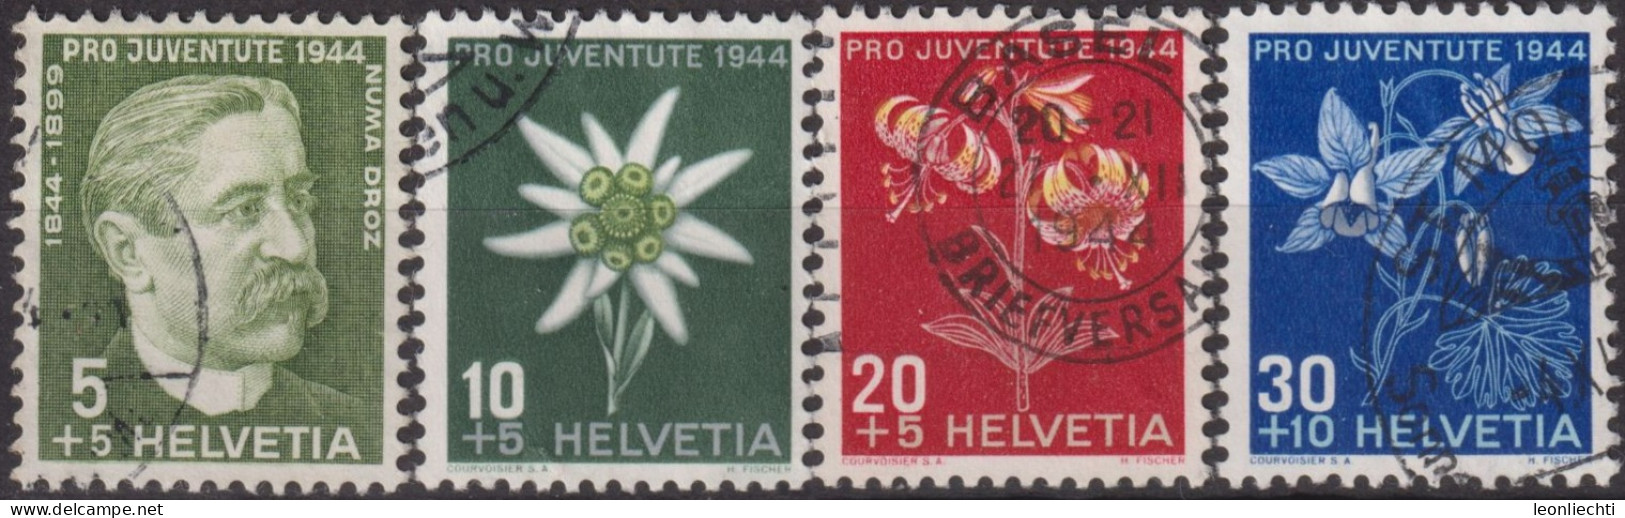 1944 Schweiz Pro Juventute ° Mi:CH 439-442, Yt:CH 399-402, Zum:CH J109-112, Numa Droz Und Alpenblumen - Oblitérés